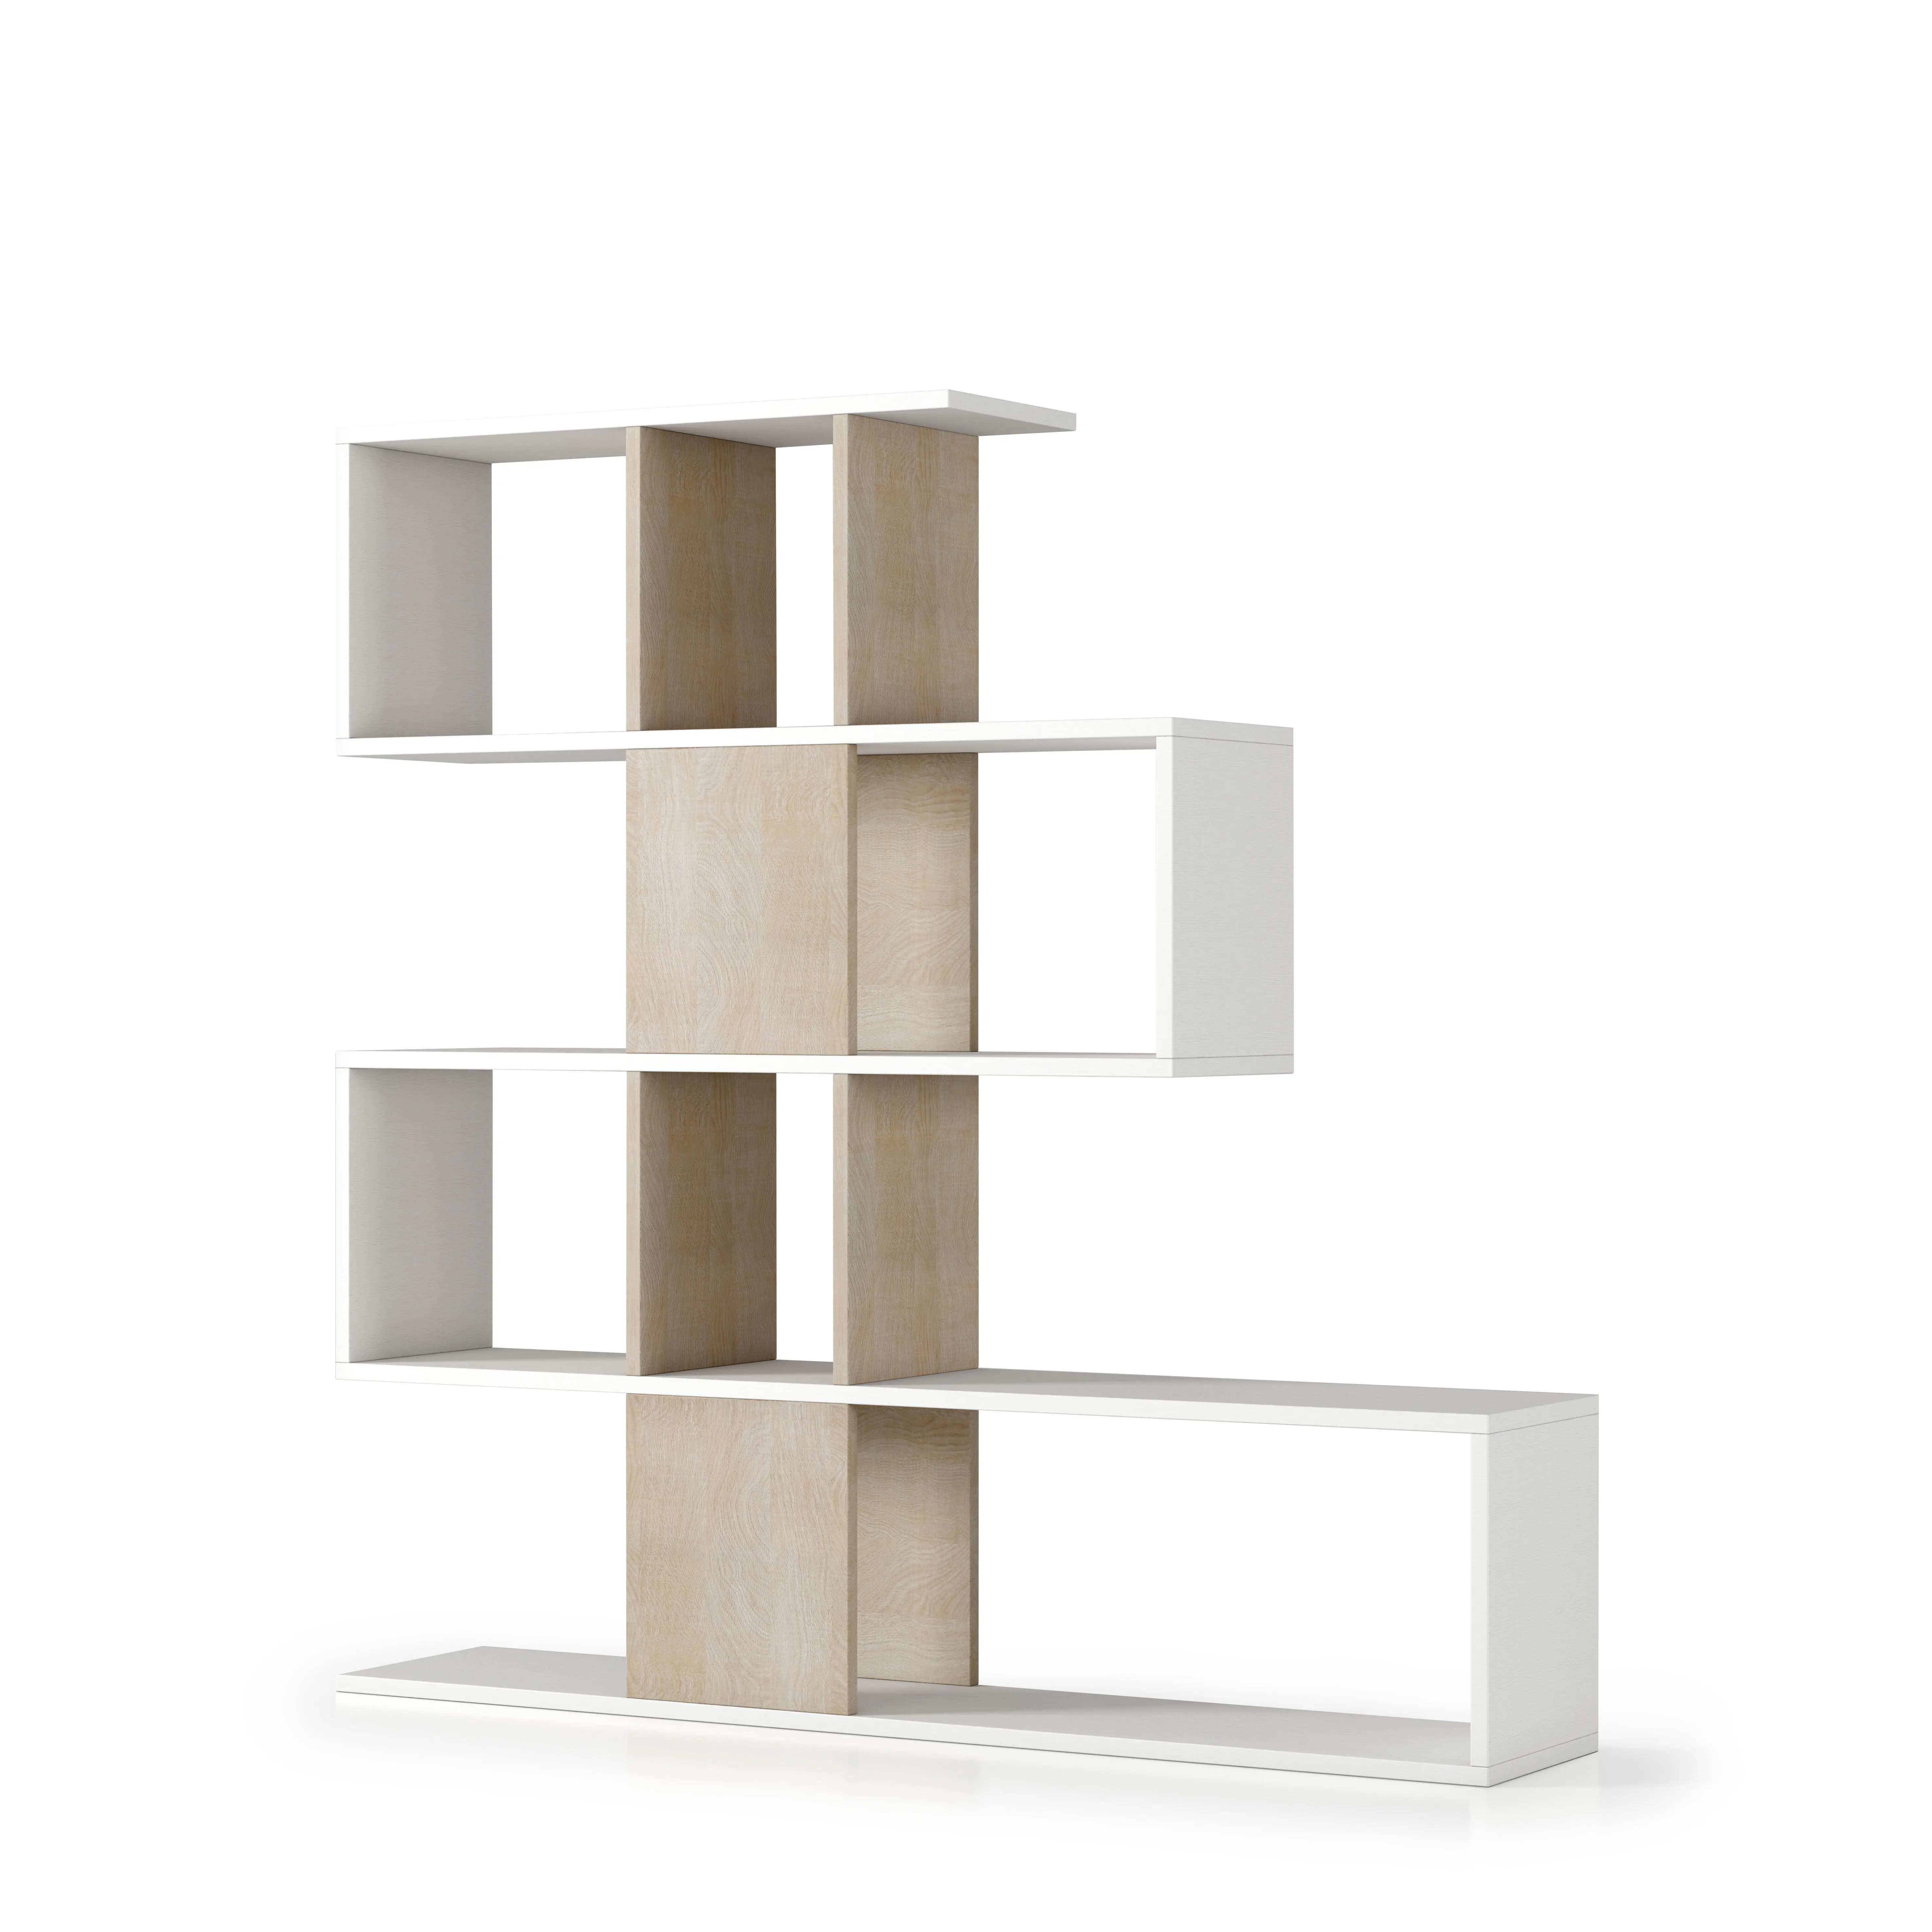 Mueble de madera de roble blanco hecho en Italia, estantería, estantería, exhibición, sala de estar